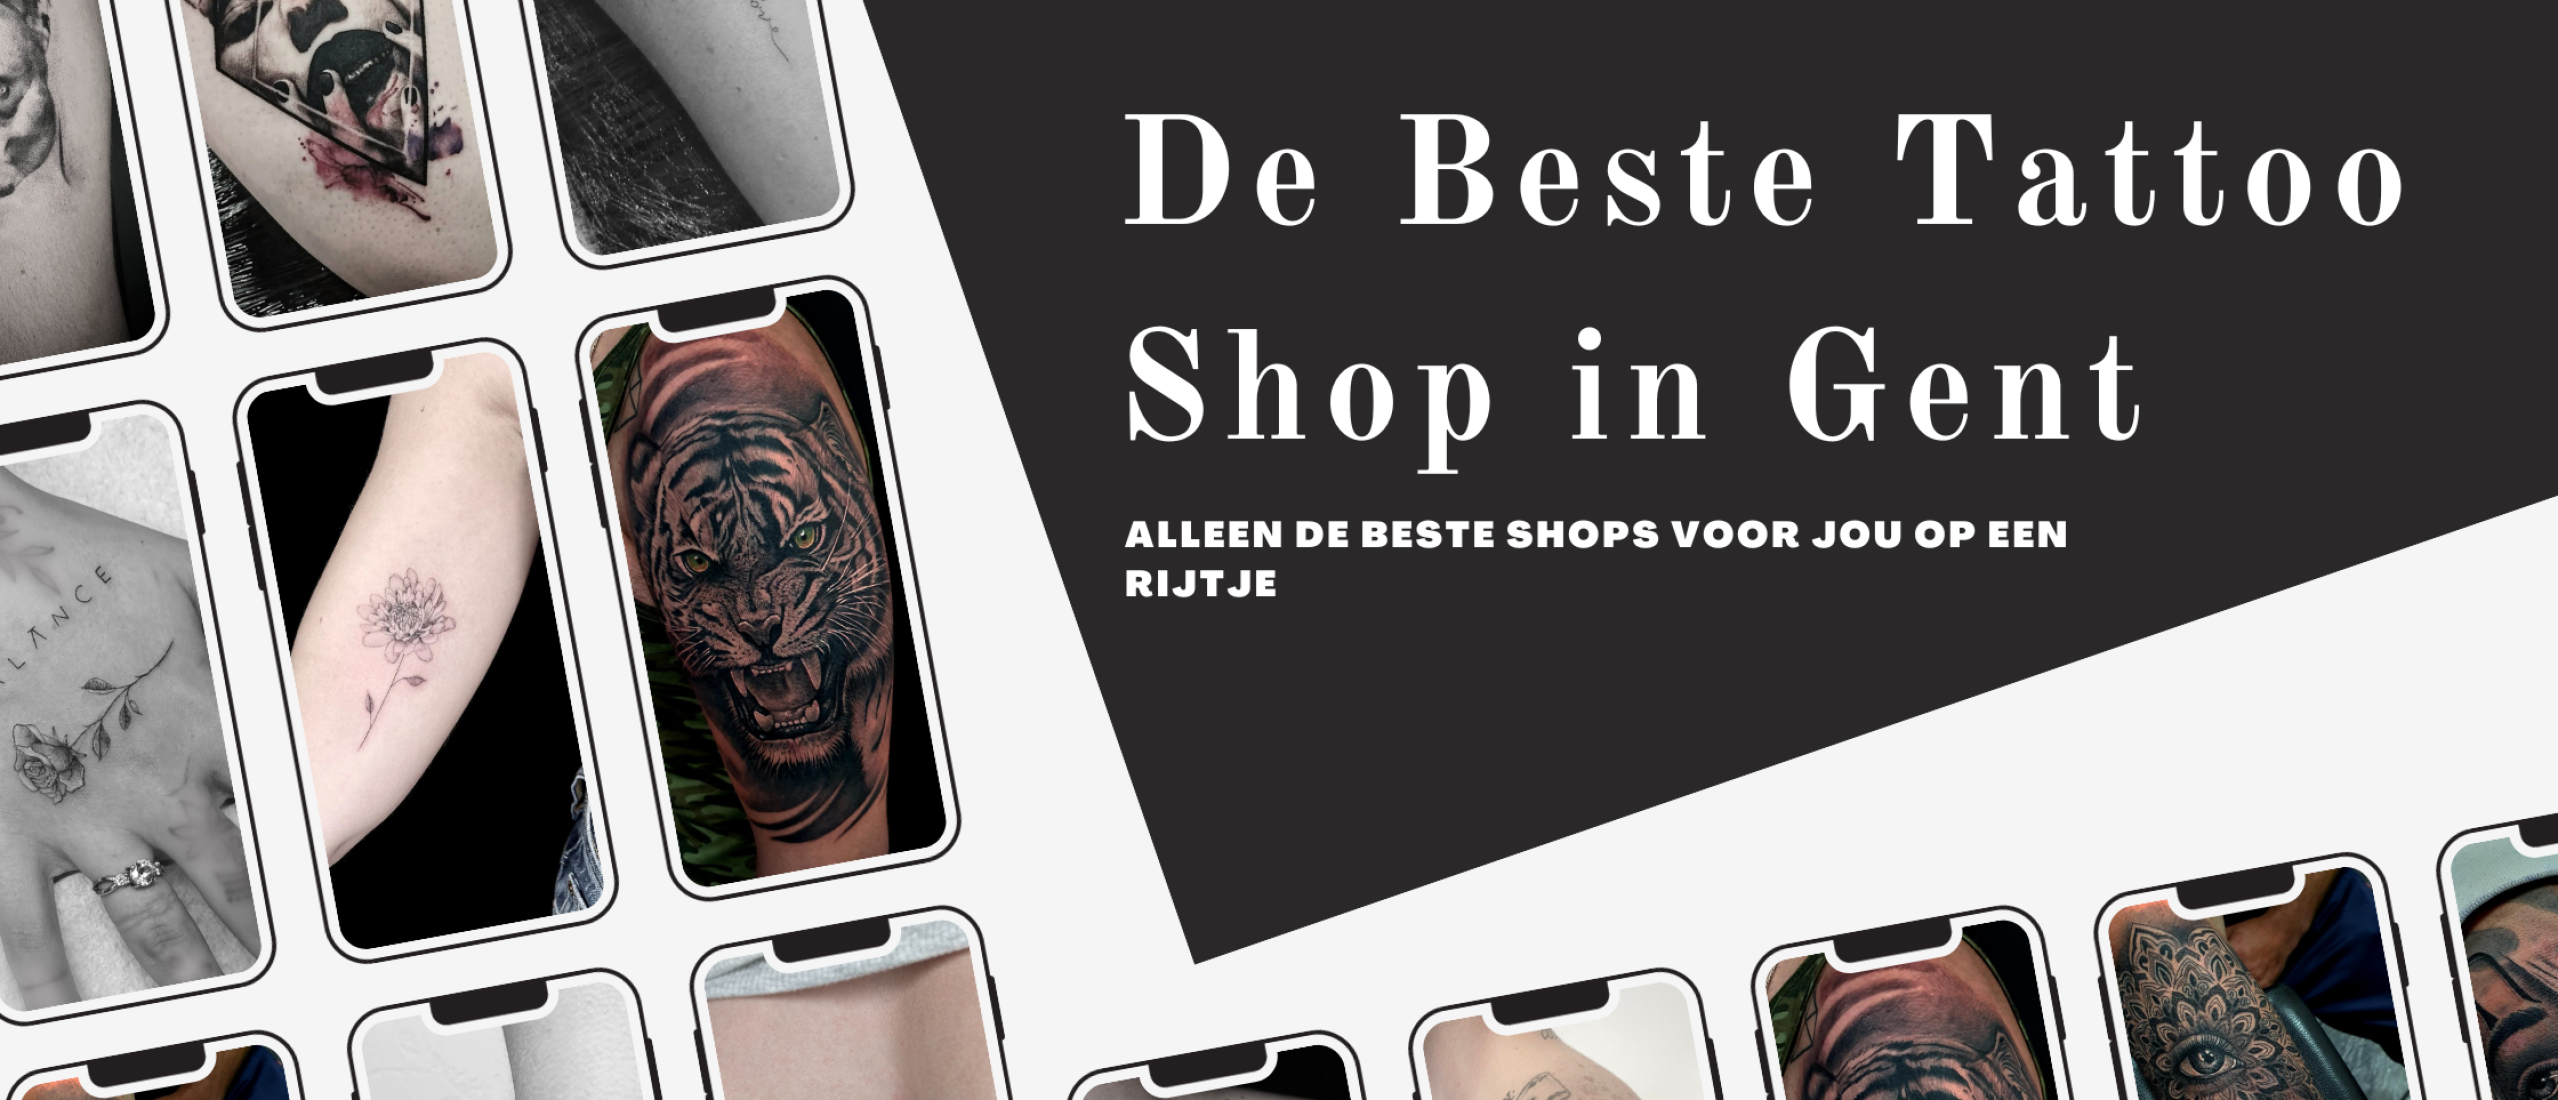 De beste tattooshops van Gent